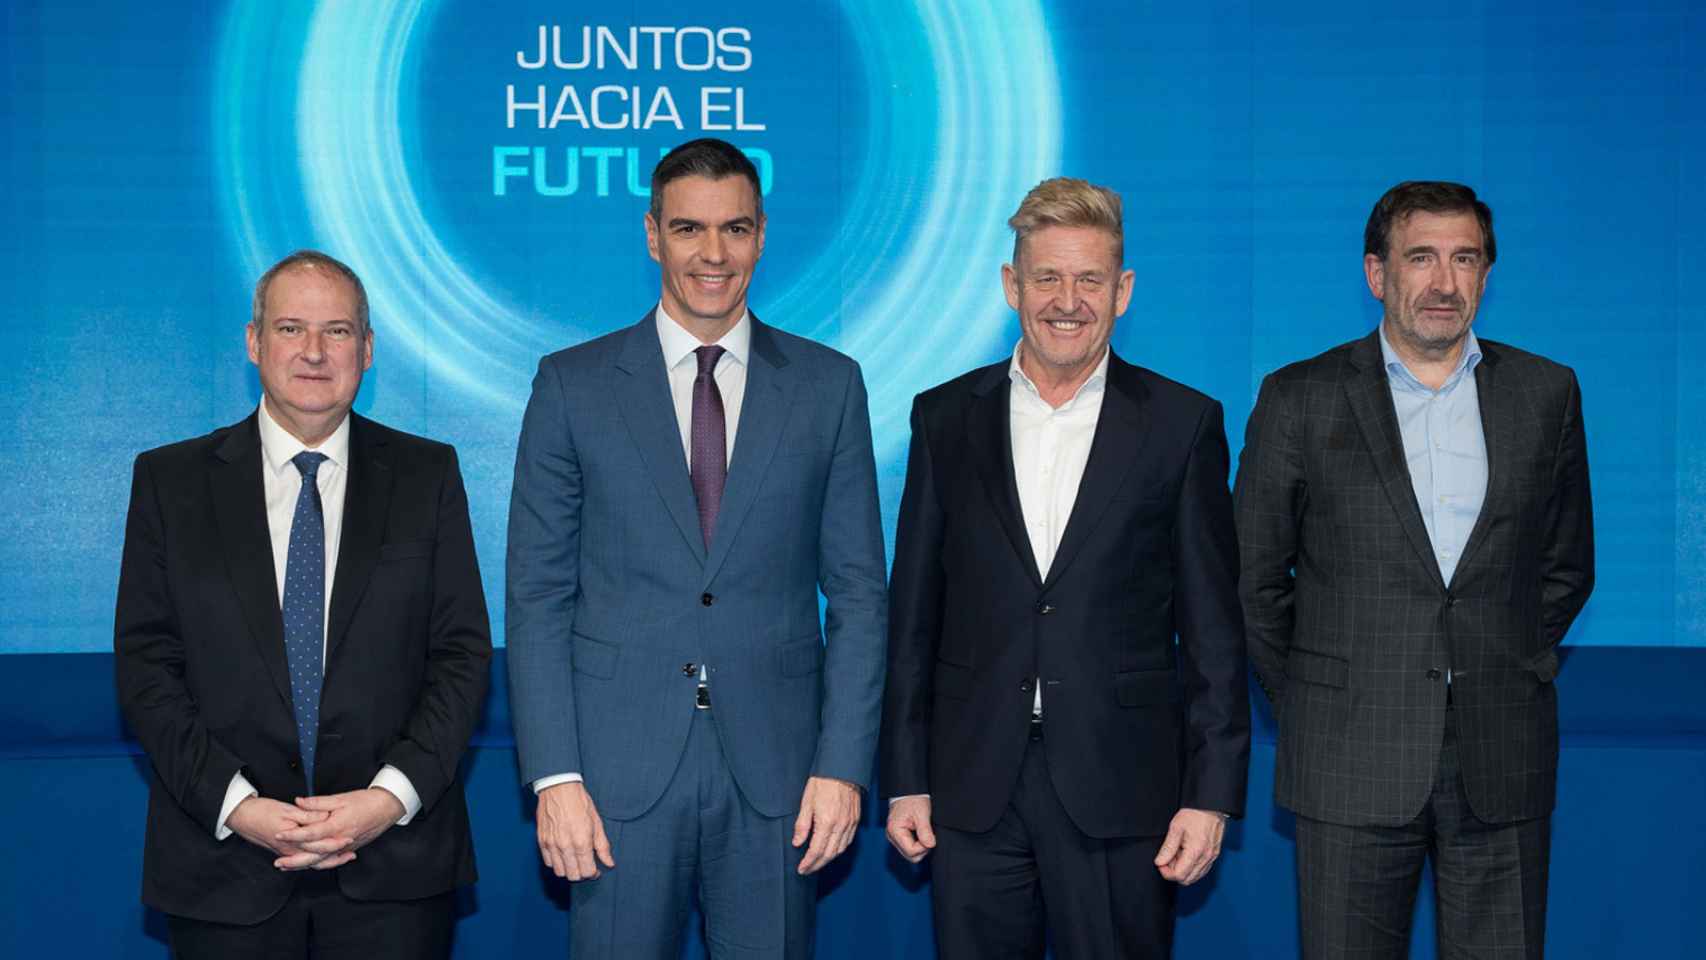 El ministro de Industria y Turismo, Jordi Hereu; el presidente del Gobierno, Pedro Sánchez; el presidente de Anfac Wayne Griffith y el director general de Anfac, José López-Tafall.